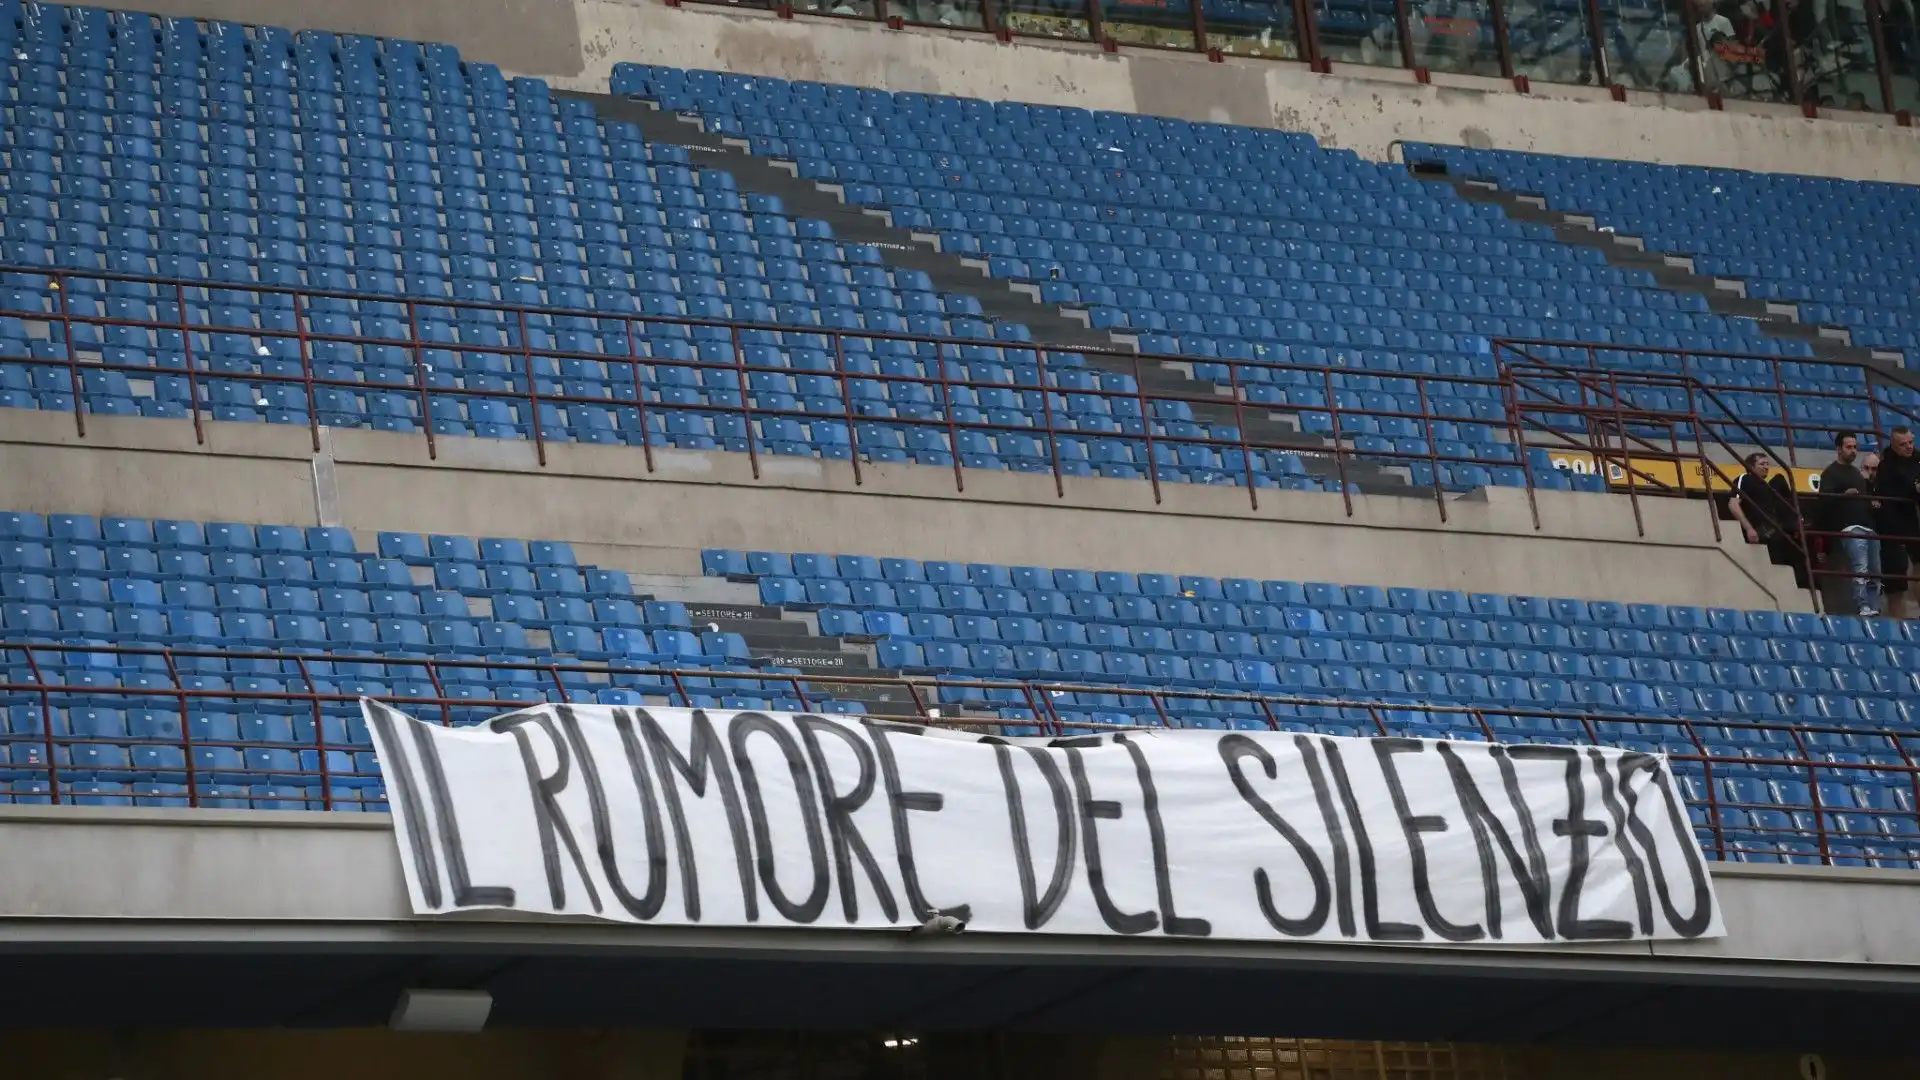 La protesta della Curva Sud Milano e dell'Associazione Milan club continua anche nella sfida contro i sardi, proseguendo quanto iniziato nella sfida contro il Genoa